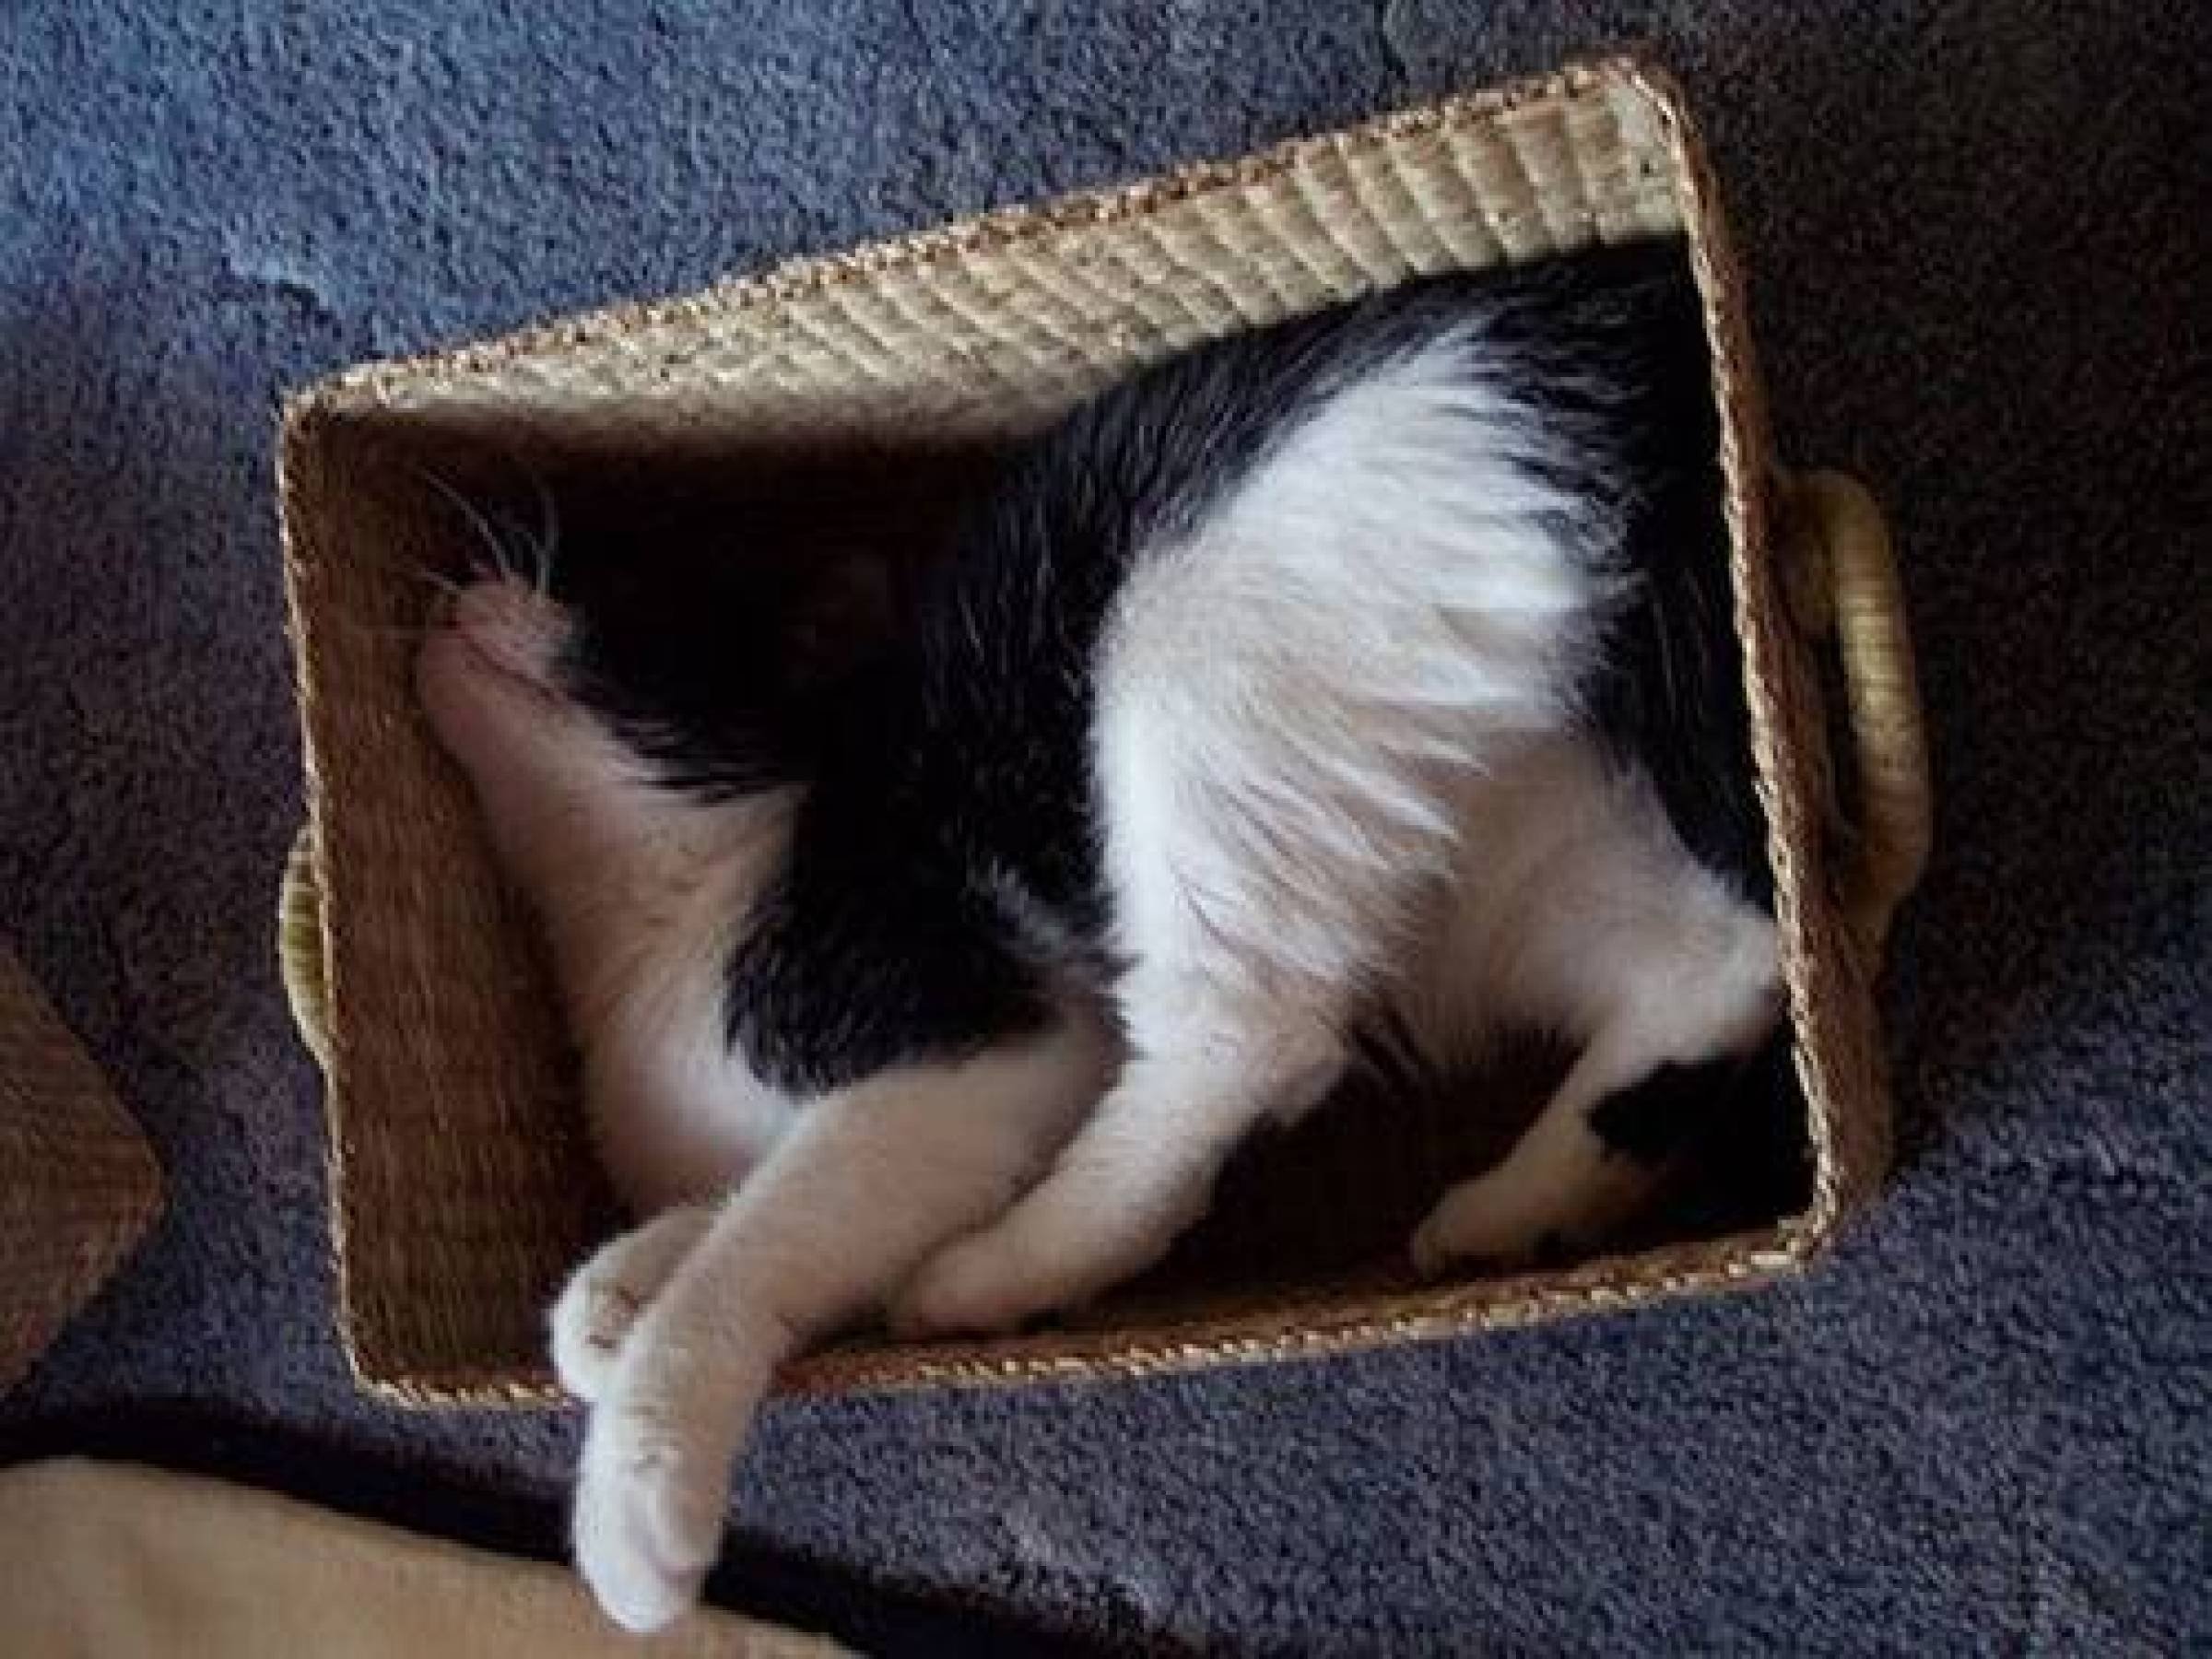 Спать место. Спящие коты в смешных позах. Кот укладывается спать. Кот спит в смешной позе. Смешные коты спят.